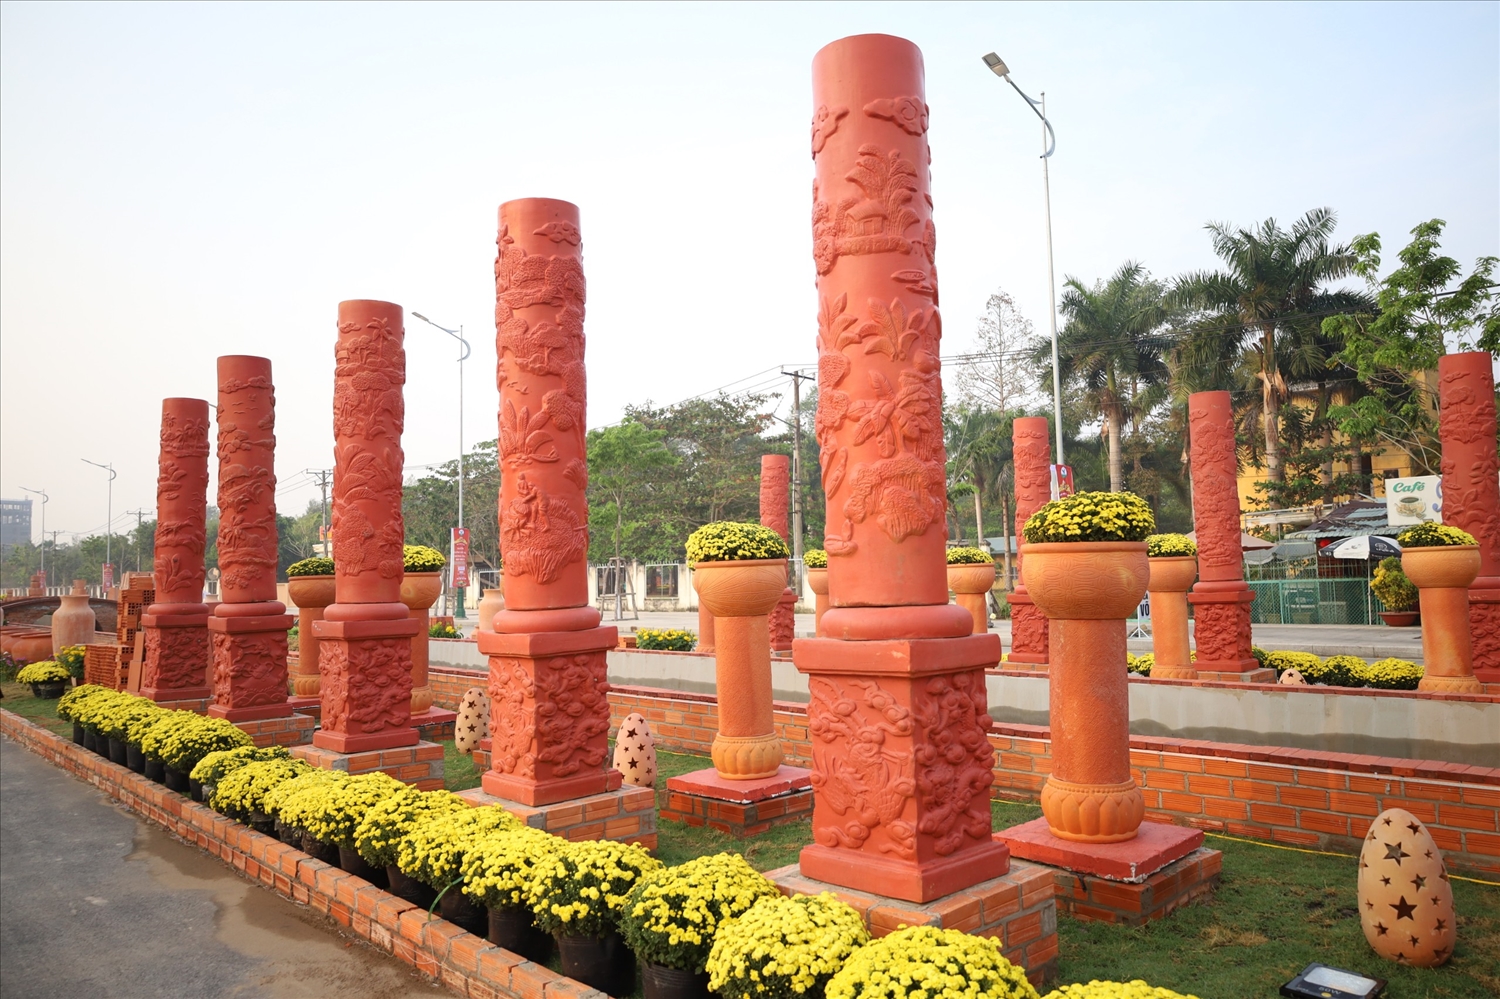 Đường gốm và hoa dài 700m, rộng hơn 9m, sử dụng trên 2.000 sản phẩm gốm đỏ các loại của địa phương sản xuất, trải dài từ cổng chào đến khu hành chính tỉnh.